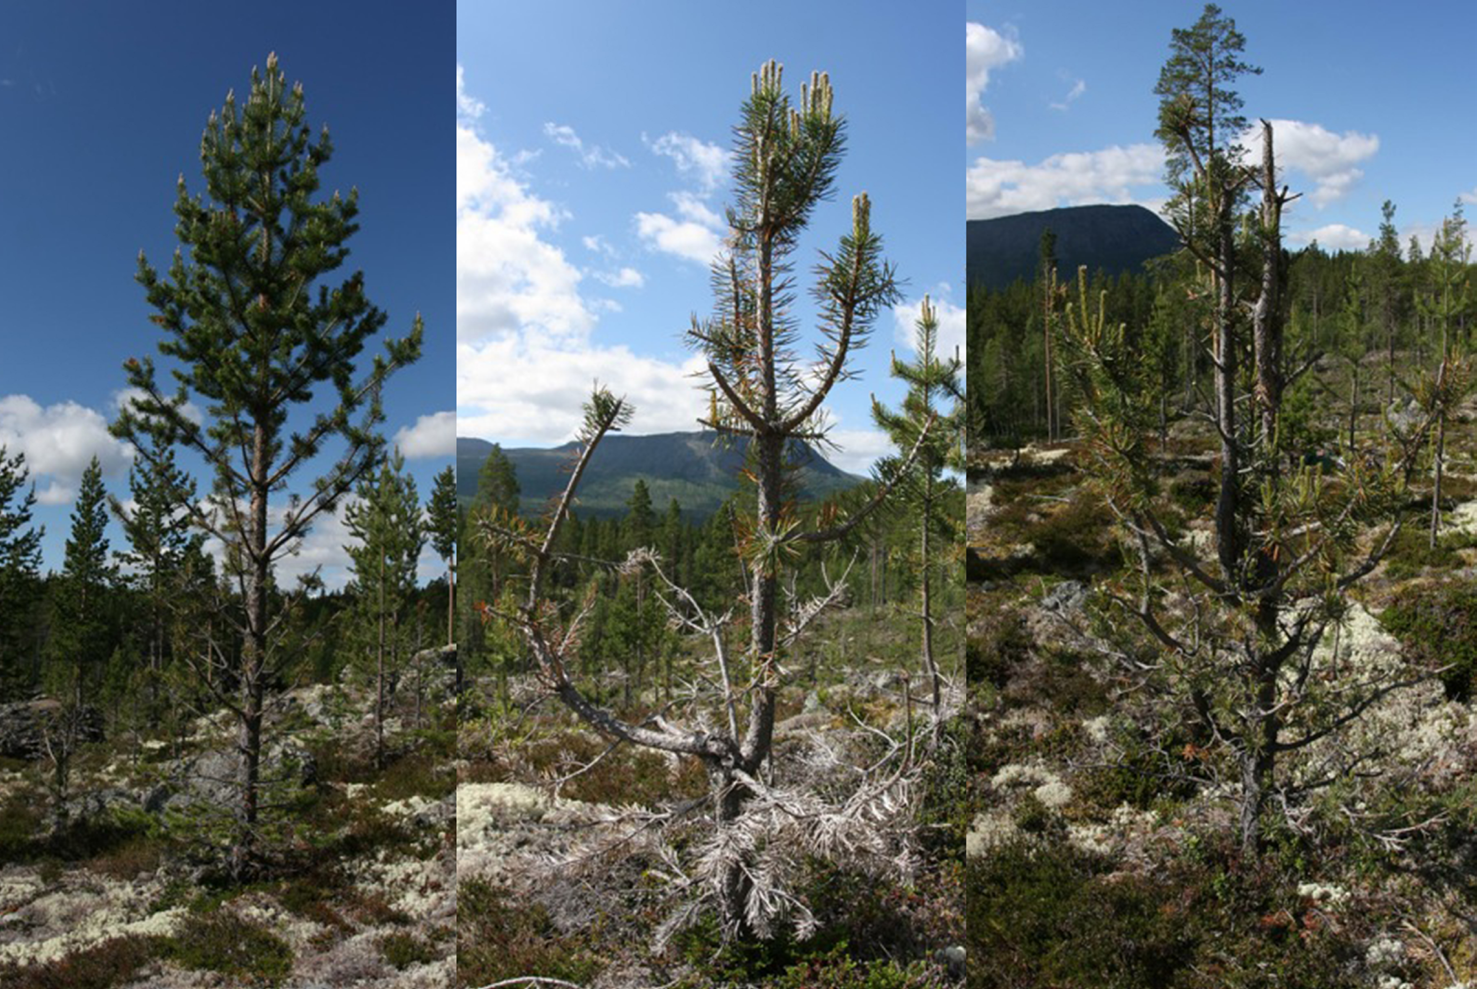 Christina Skarpe & Karen Marie Mathisen betats föregående vinter. Av furu hade nära 90 % av träd med accumulerat bete 3 betats föregående vinter (Figur 1).